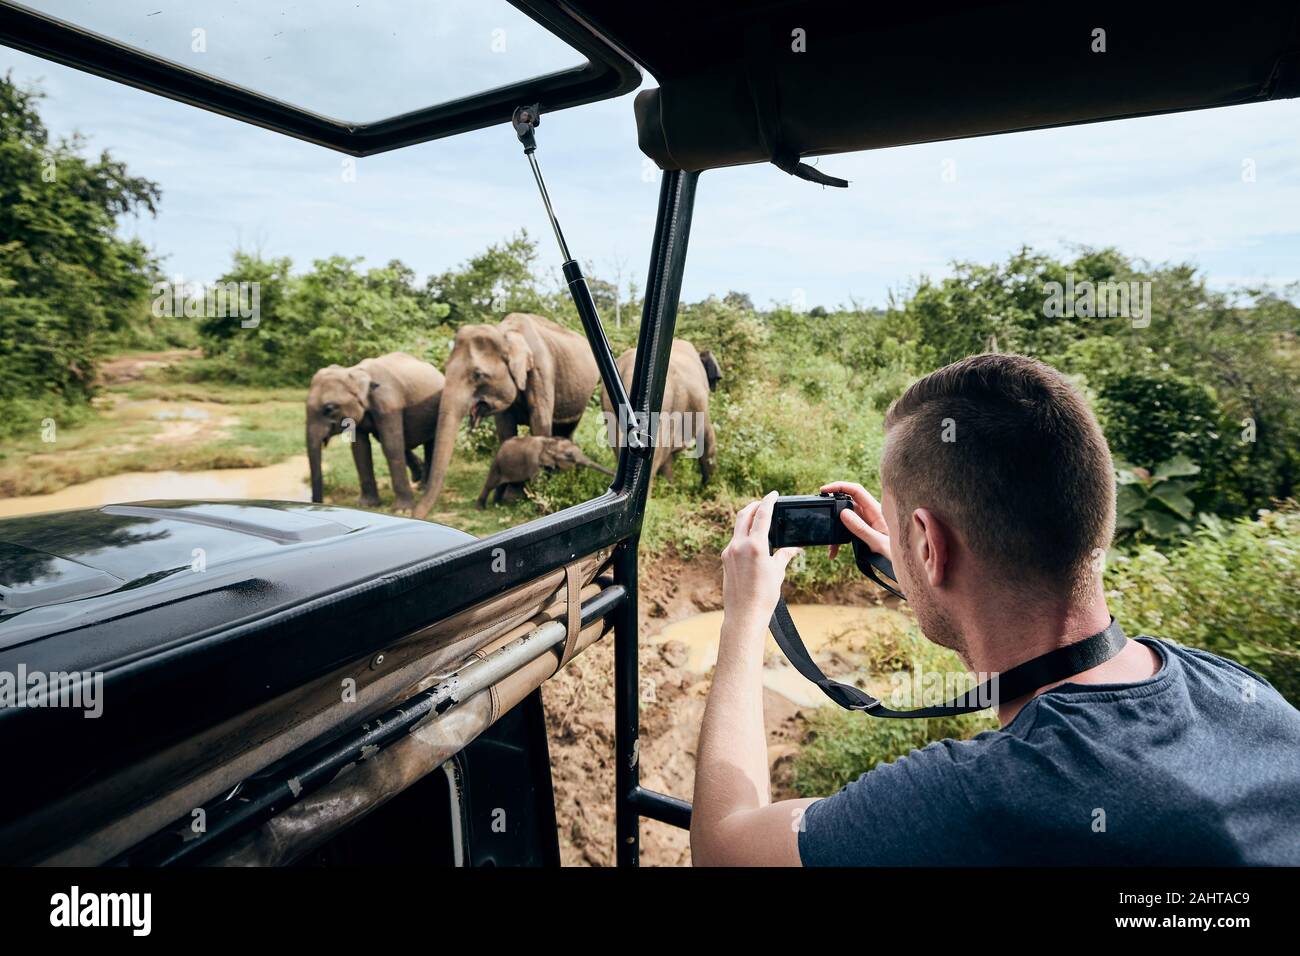 Photographie de groupe d'éléphants. Jeune homme sur safari voyage en voiture tout-terrain au Sri Lanka. Banque D'Images